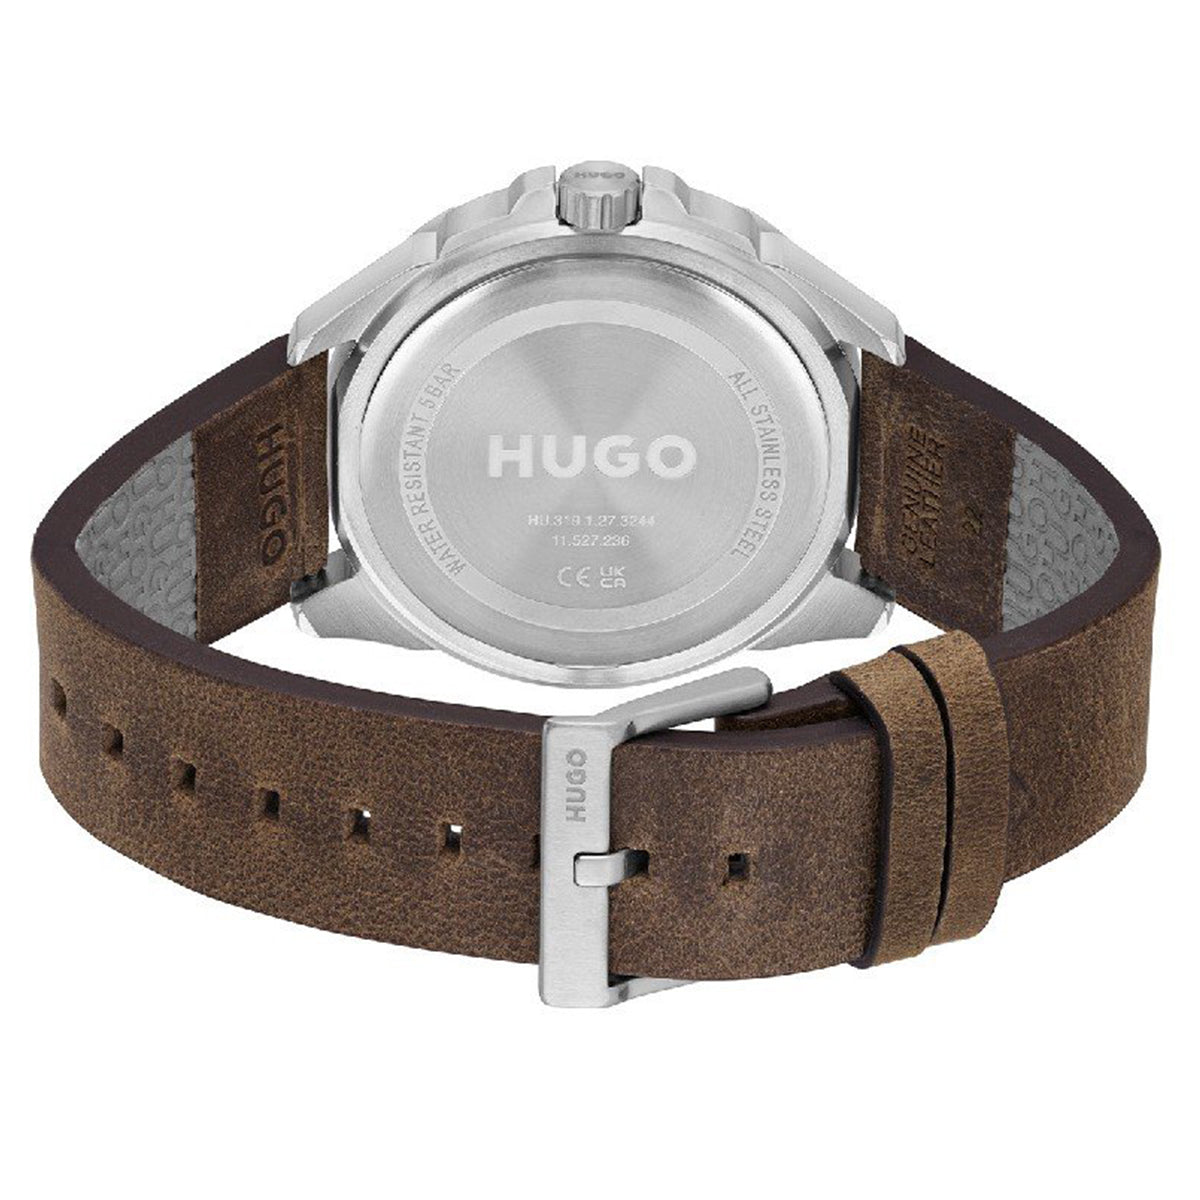 Hugo Boss - Fresh - HB153.0285